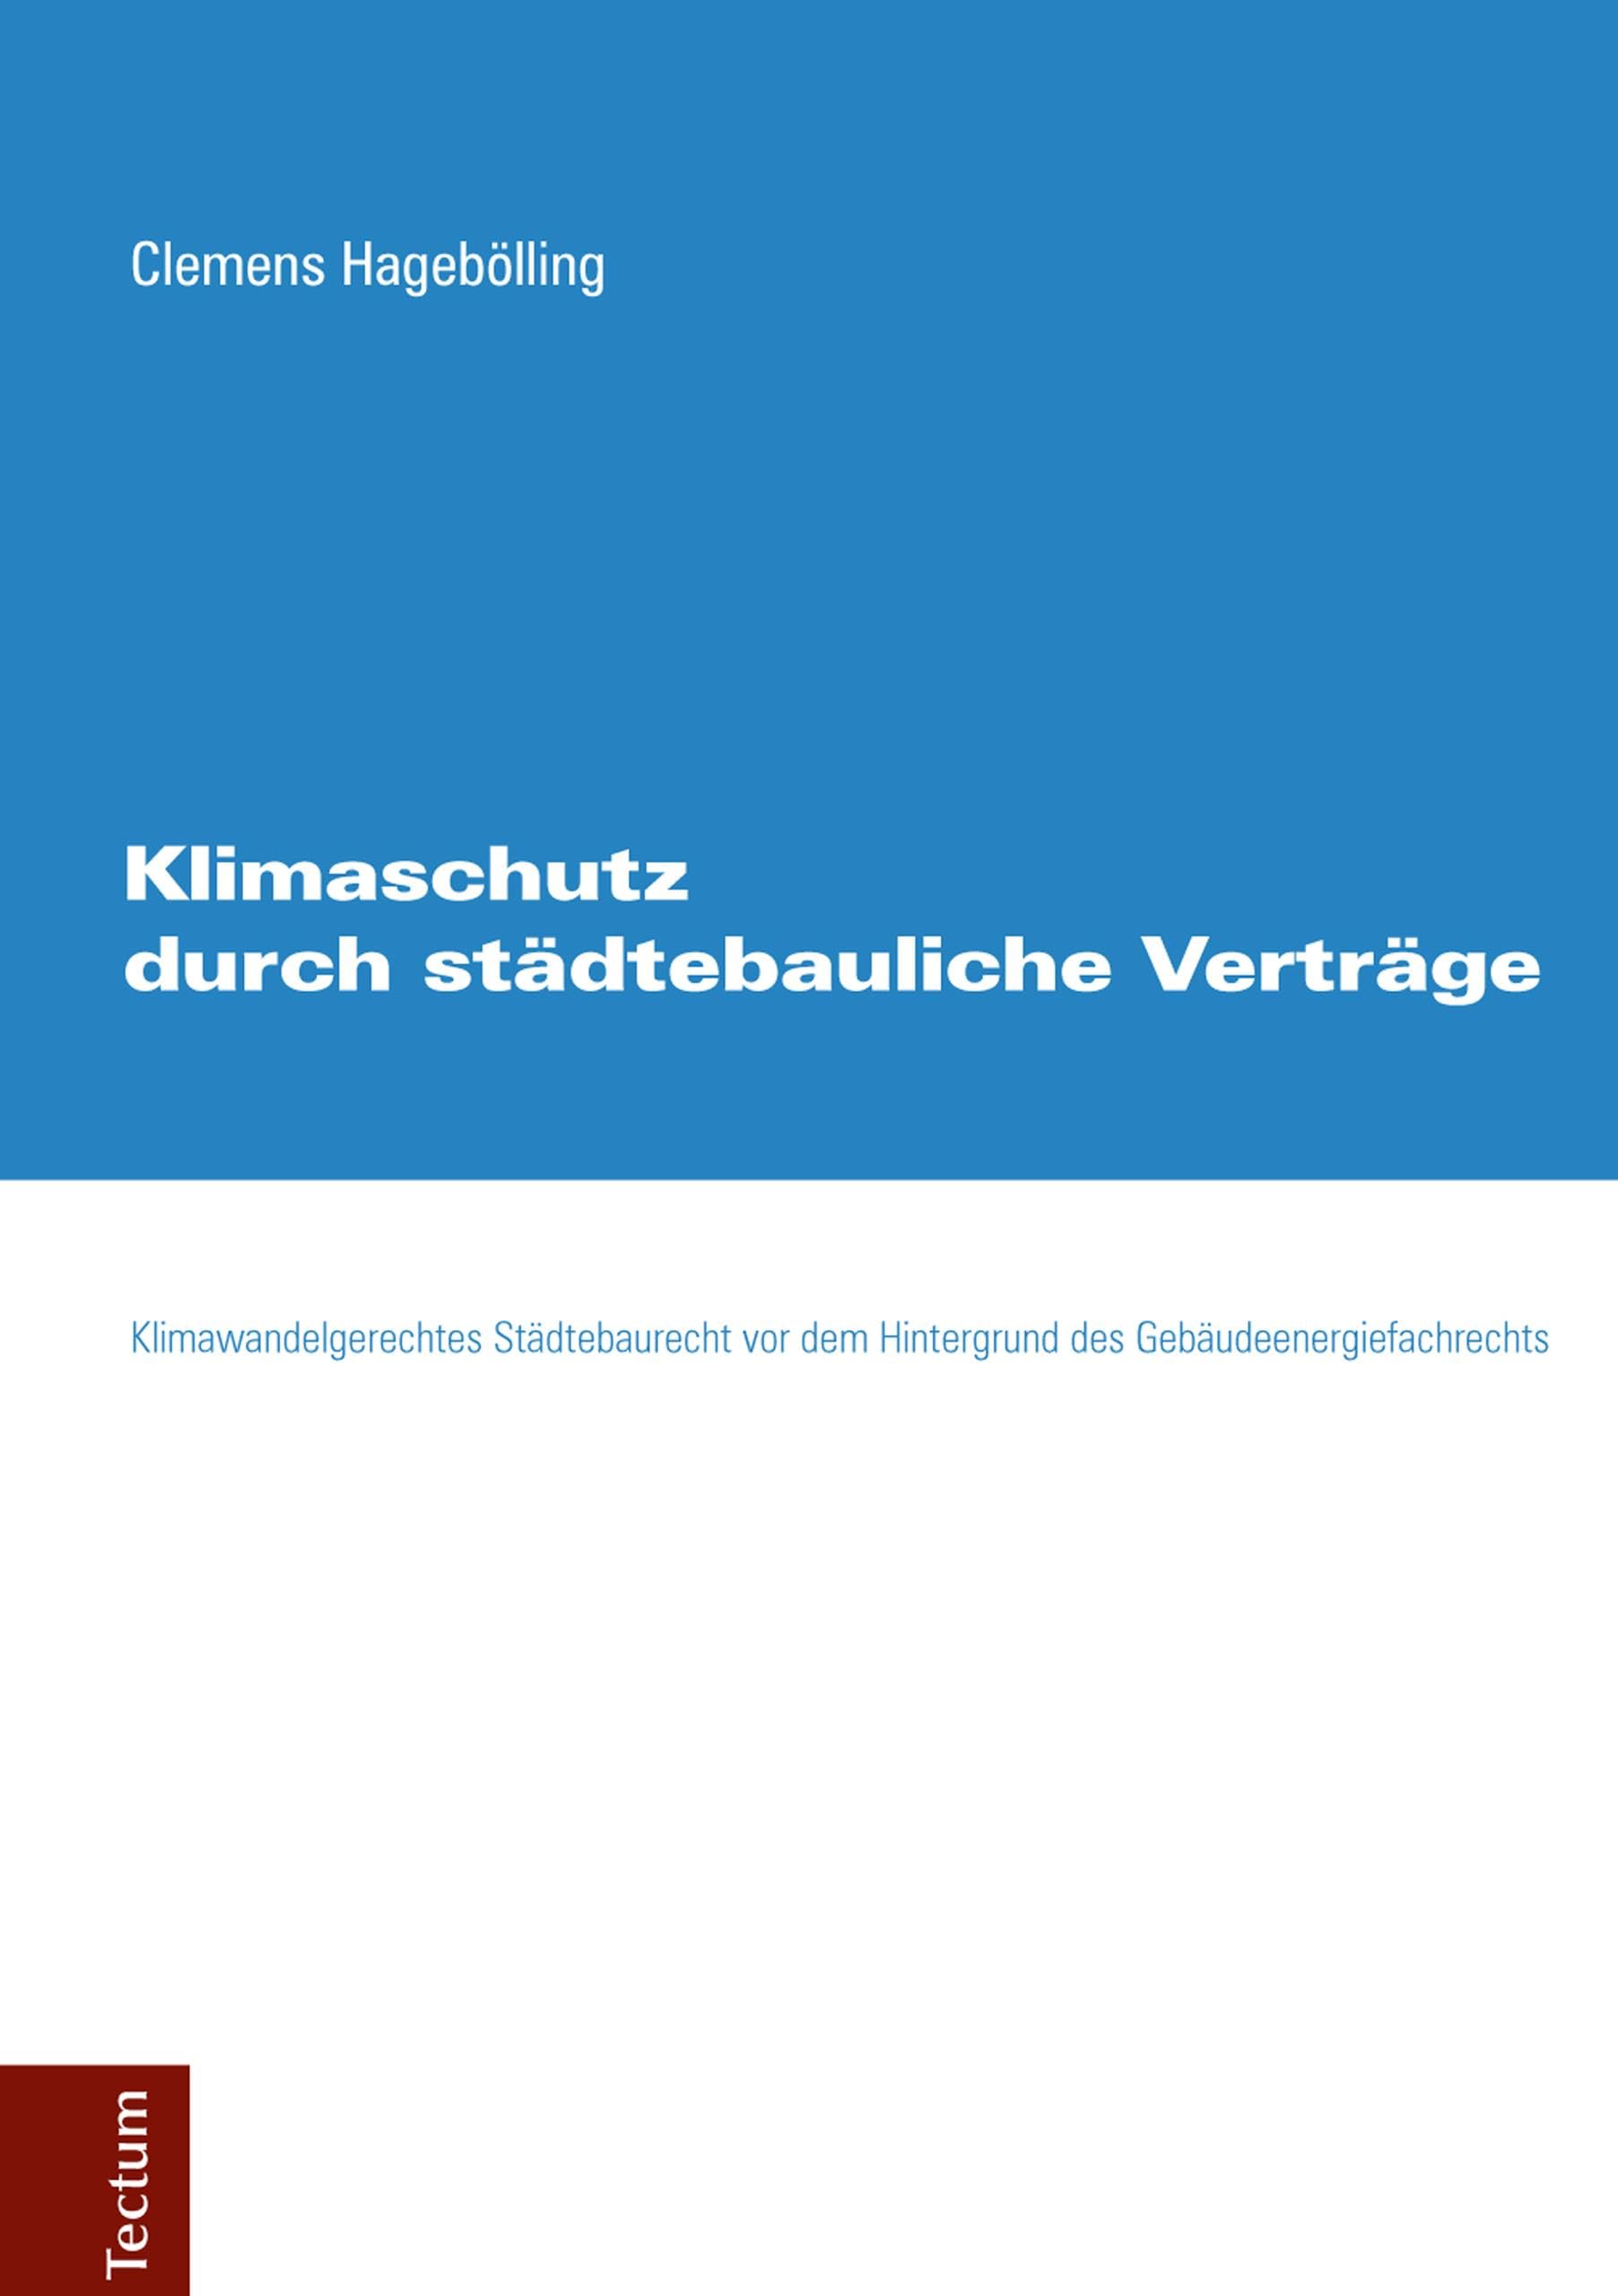 Klimaschutz durch städtebauliche Verträge: Klimawandelgerechtes Städtebaurecht vor dem Hintergrund des Gebäudeenergiefachrechts (German Edition)